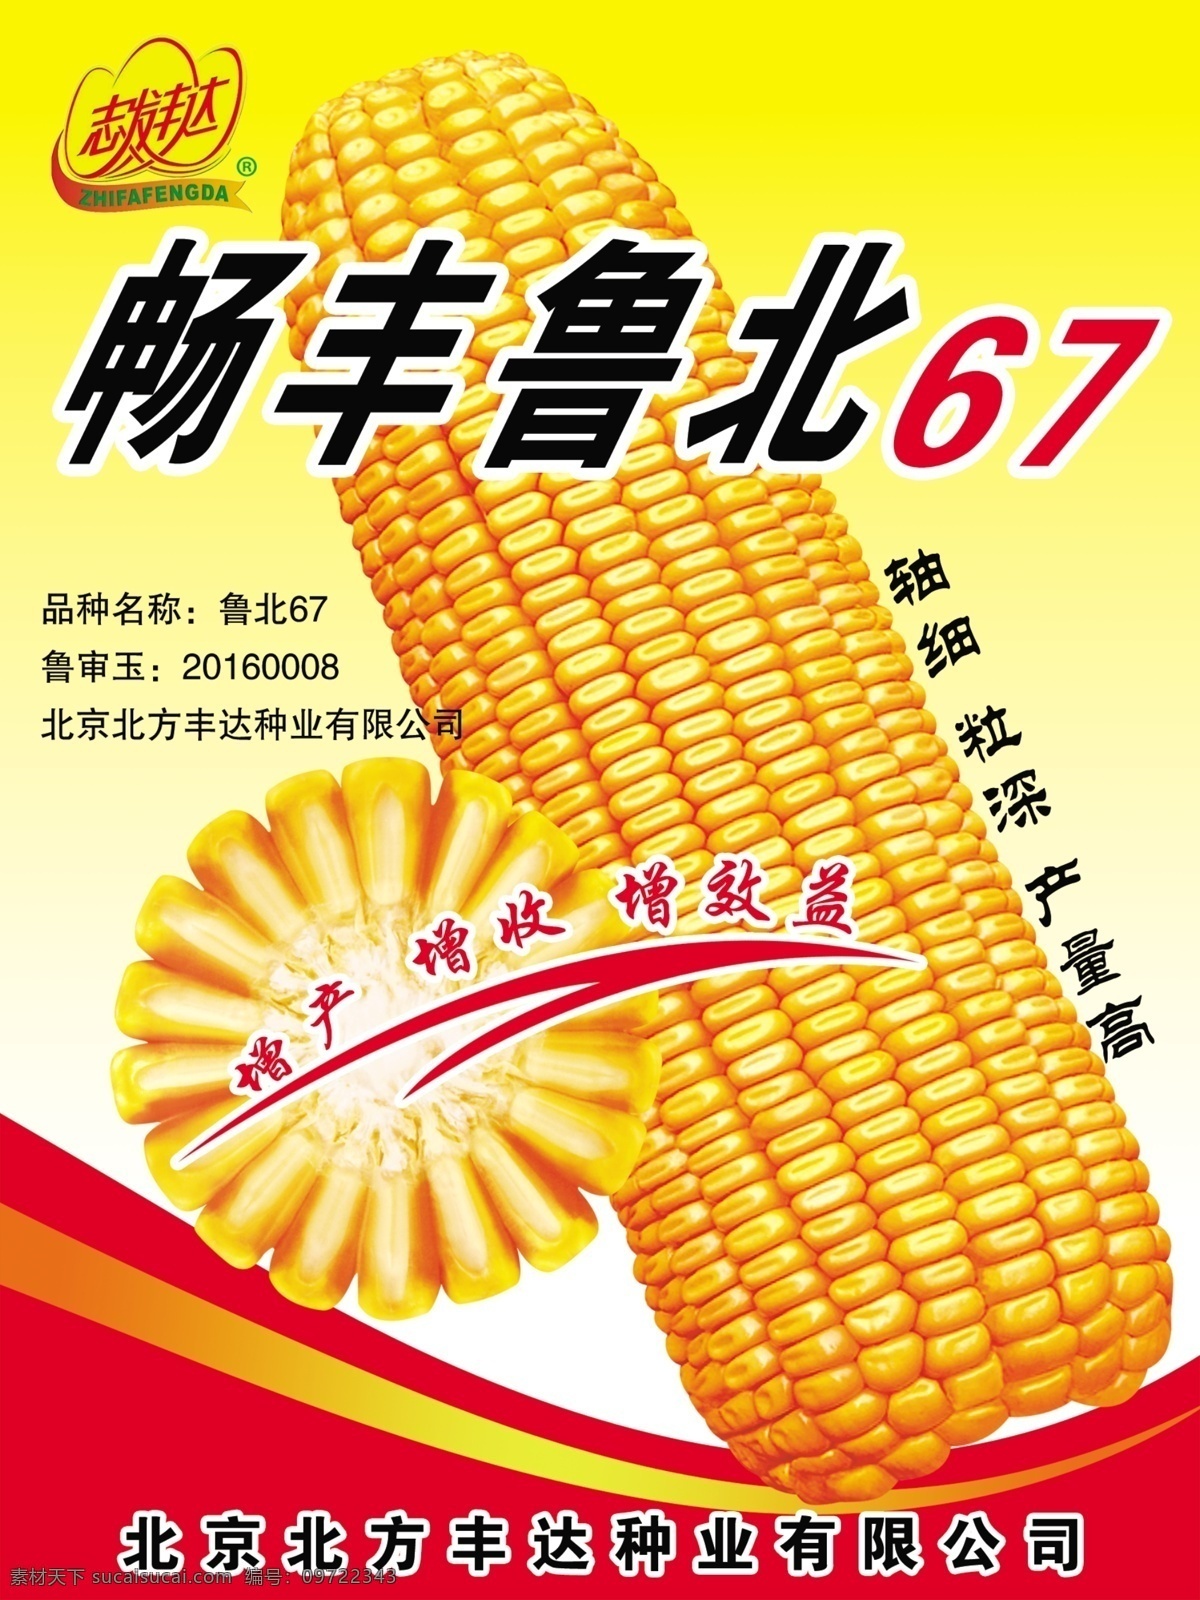 玉米海报 玉米 鲁北玉米 棒子 玉米宣传